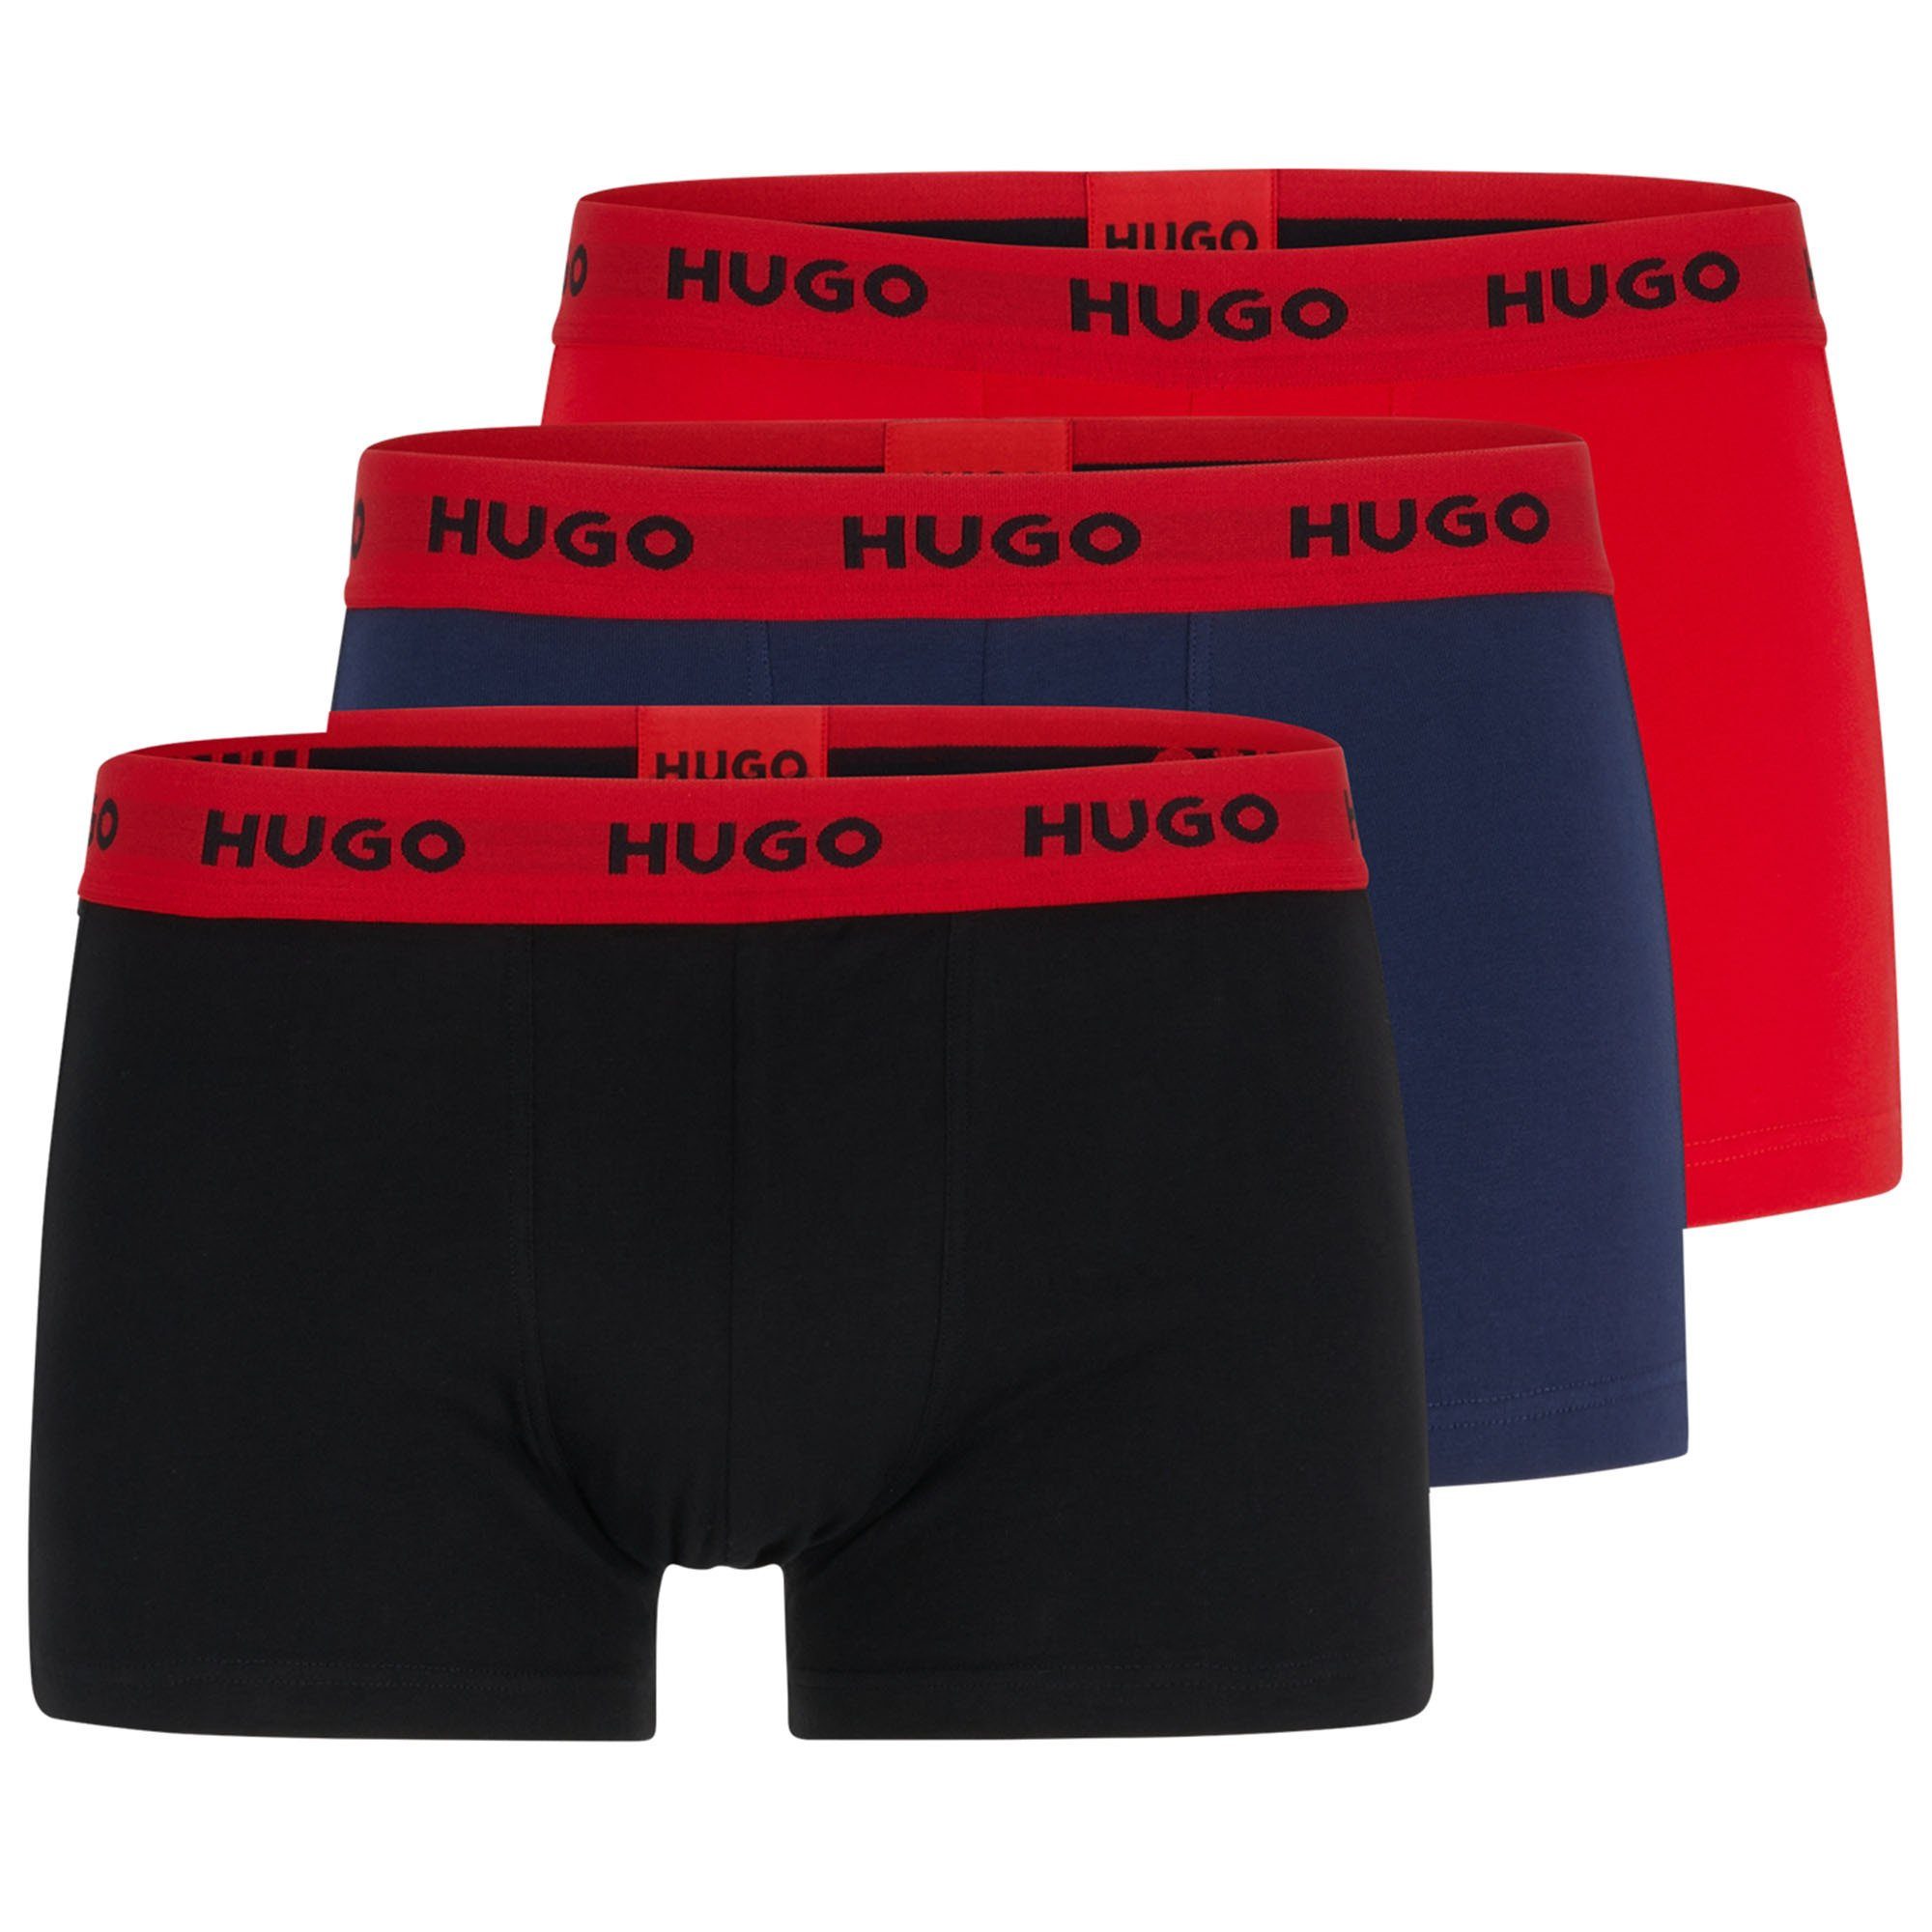 HUGO Boxer Herren Boxer Shorts, 3er Pack - Trunks Triplet Schwarz/Rot/Blau